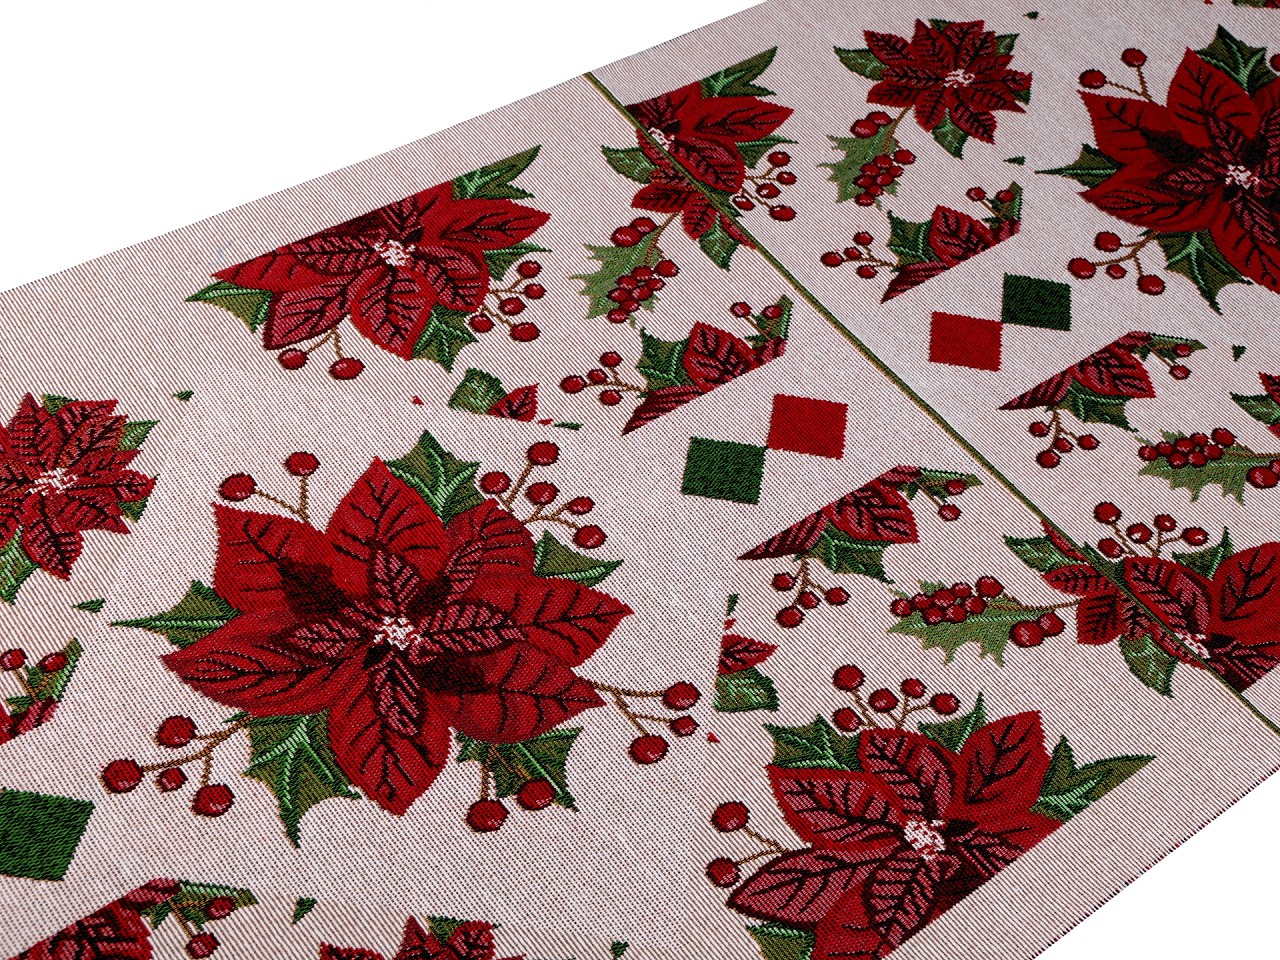 Textillux.sk - produkt Panel na gobelínový vankúš 50x50 cm vianočná hviezda